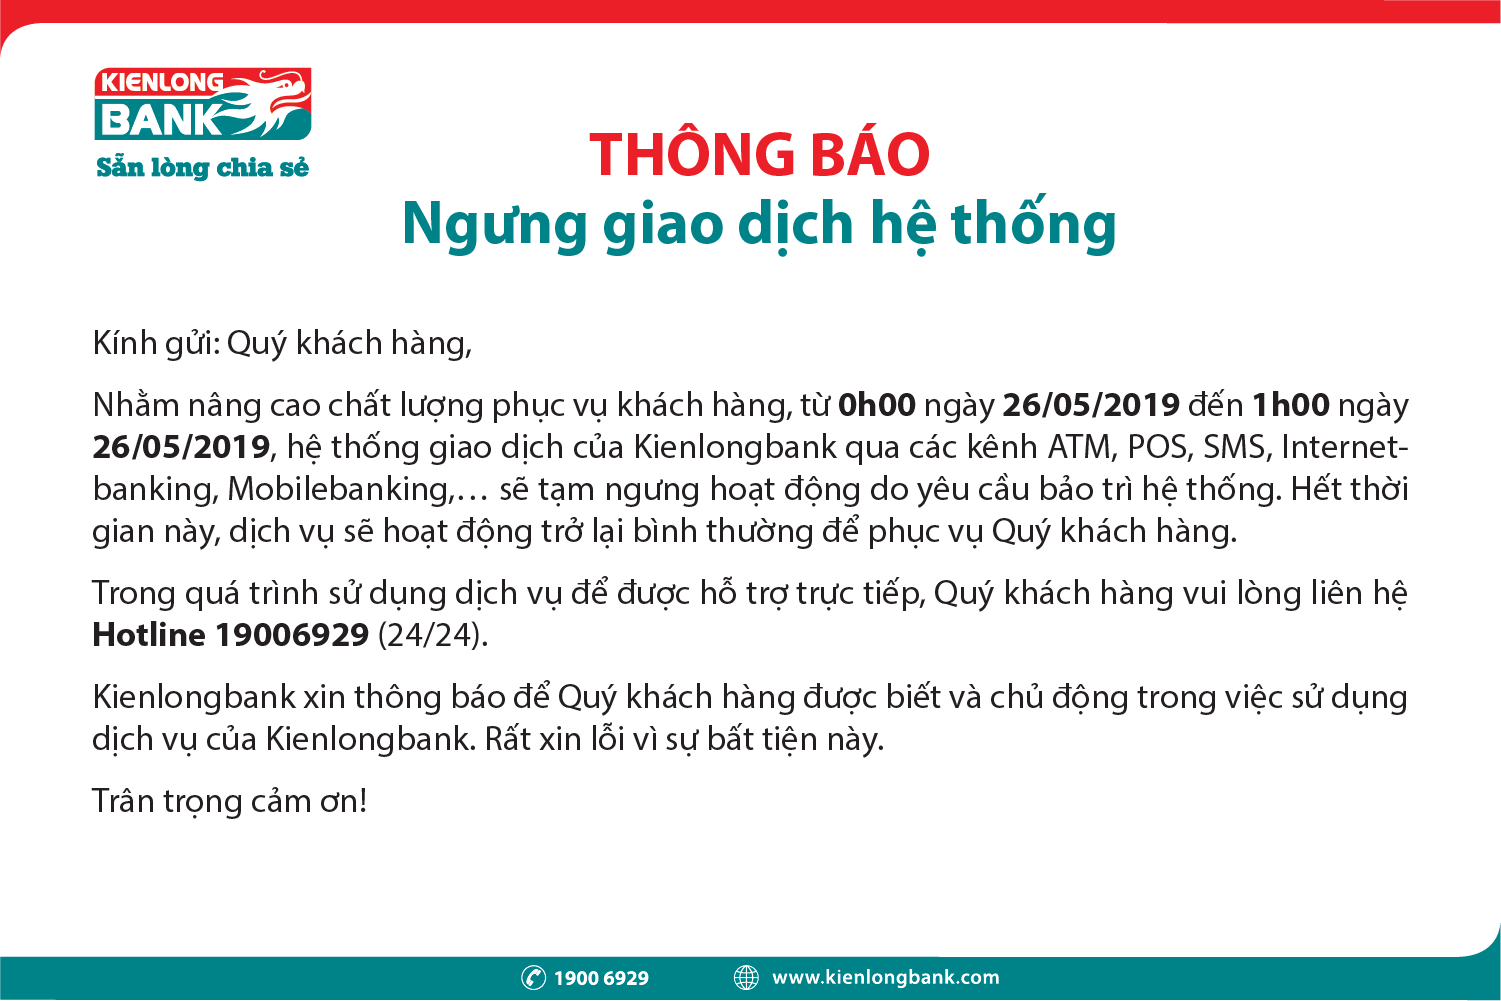 Thông báo tạm ngưng giao dịch hệ thống Kienlongbank